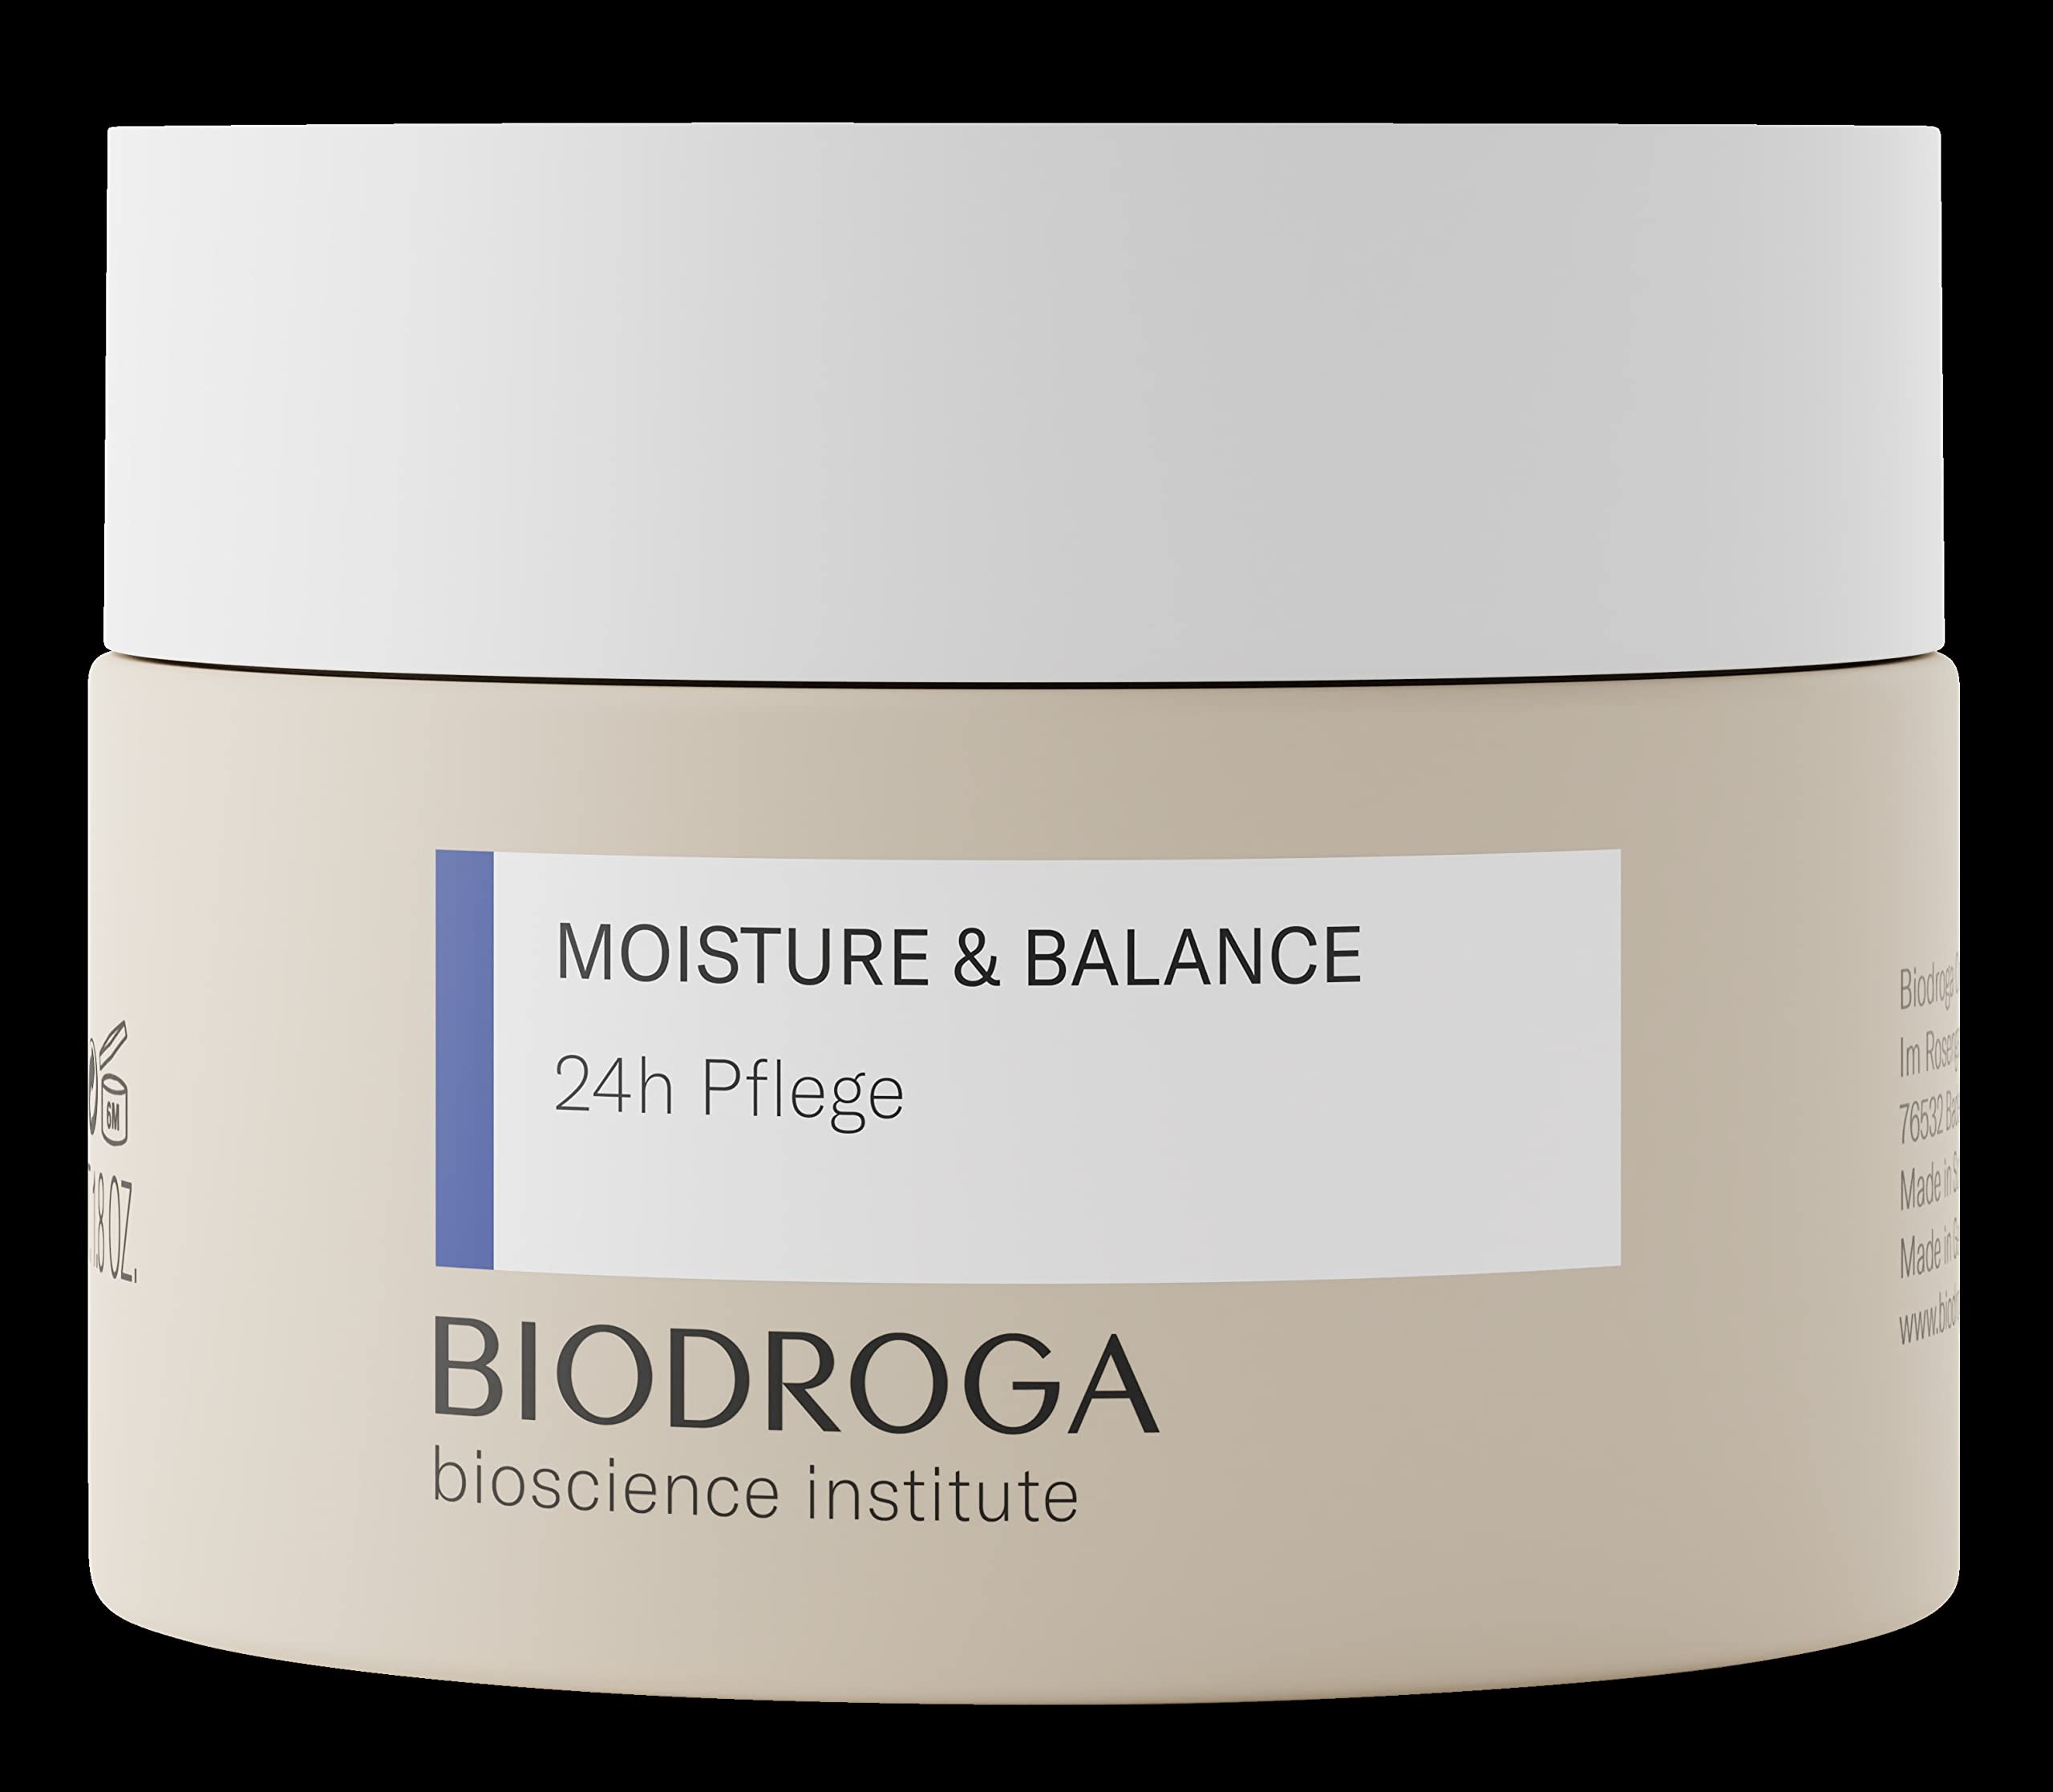 Biodroga 24h Pflege Gesichtscreme 50 ml – Feuchtigkeitscreme Gesichtspflege Regeneration Face Moisturizer